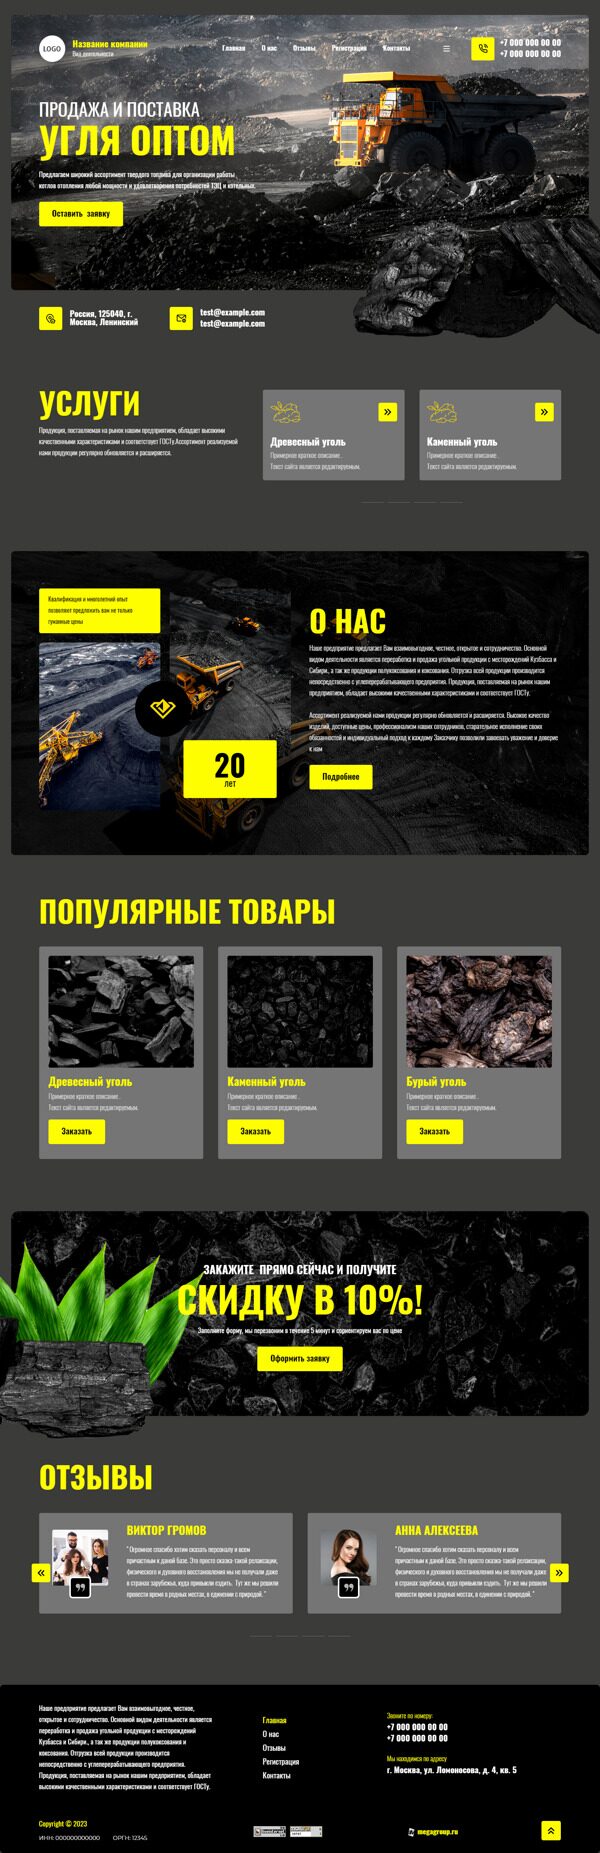 Готовый Сайт-Бизнес № 4910867 - Поставка угля (Десктопная версия)